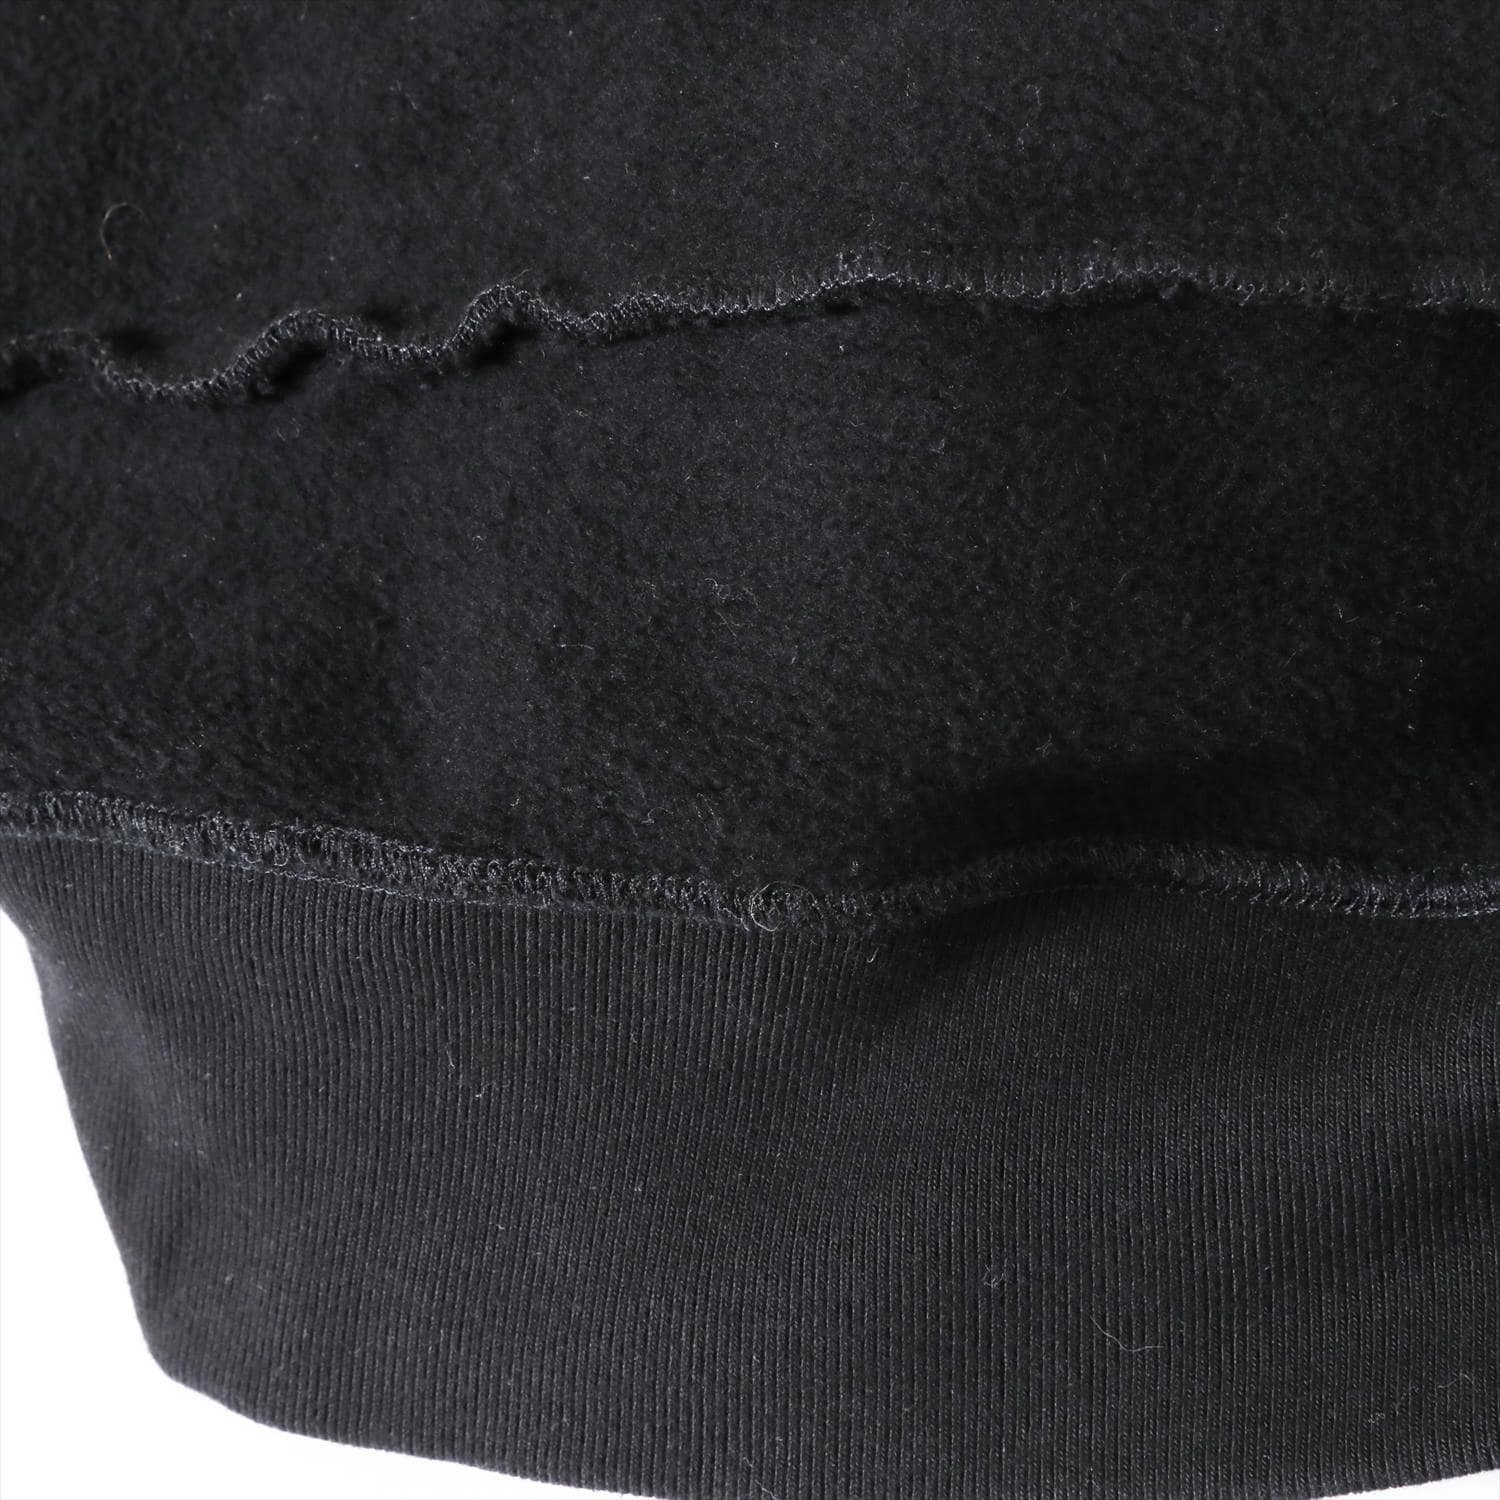 シュプリーム×コムデギャルソン コットン パーカー S メンズ ブラック 18AW Split Box Logo Hooded Sweat Shirt